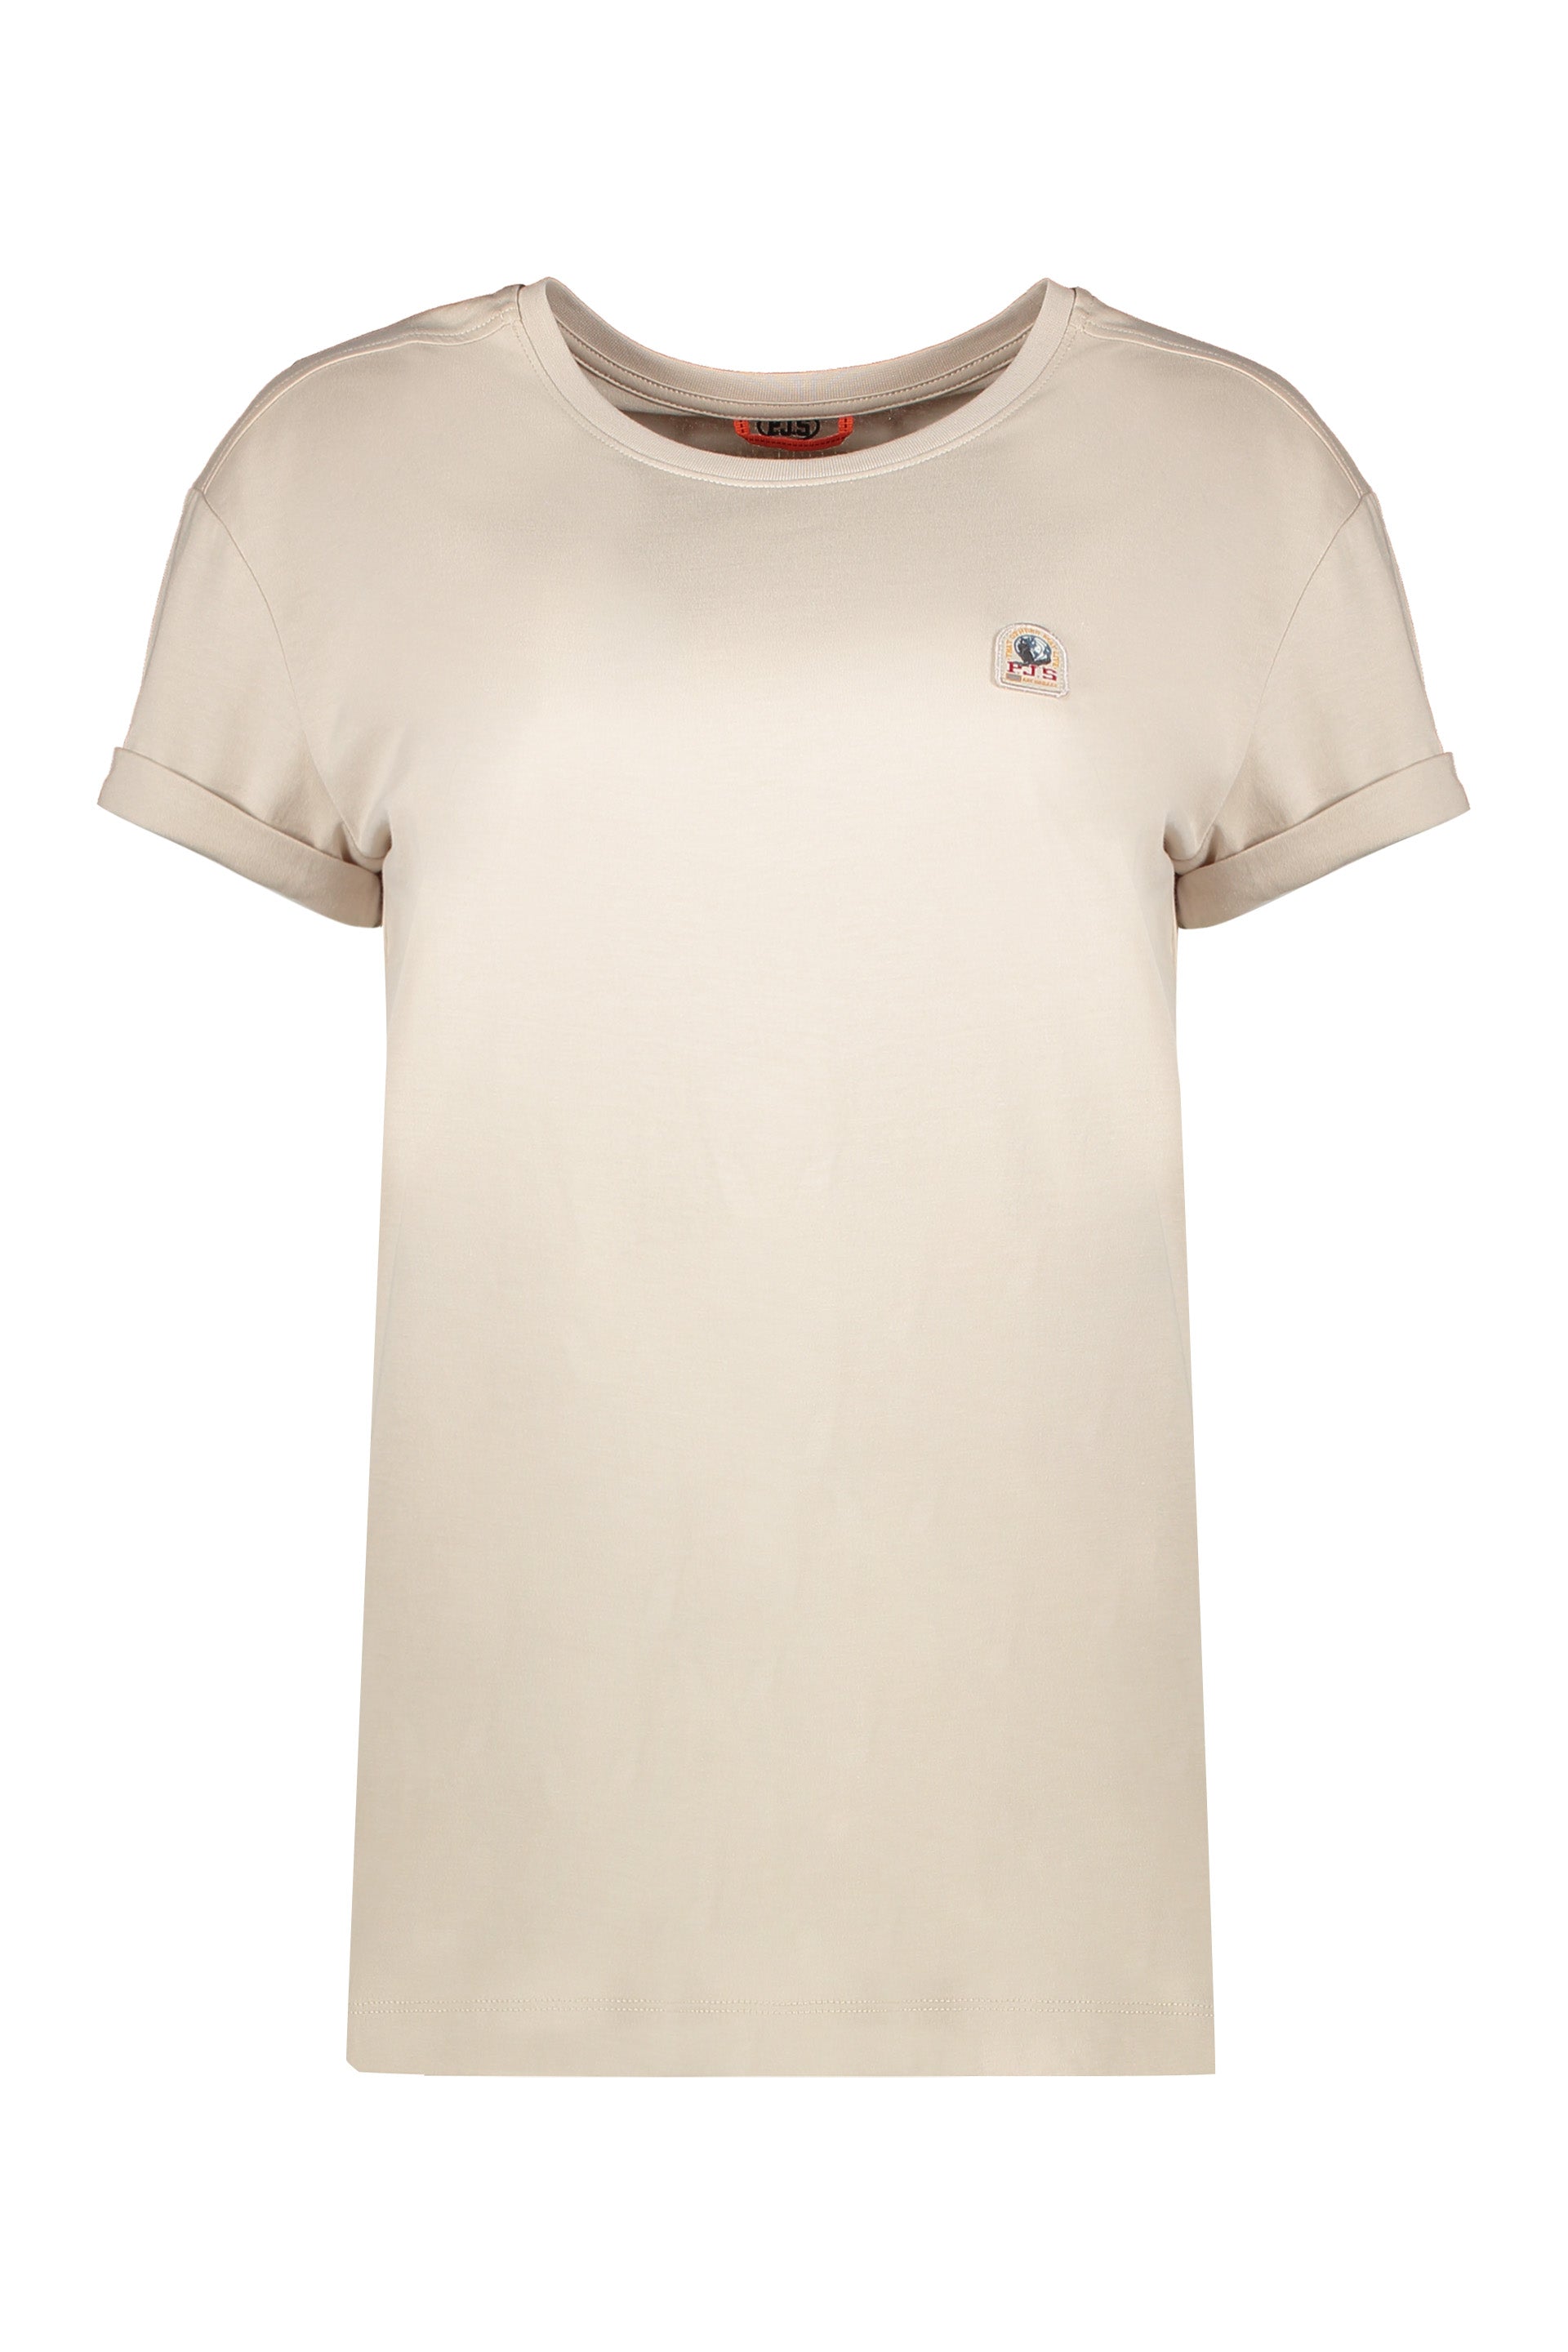 Parajumpers-OUTLET-SALE-Cotton-T-shirt-Shirts-L-ARCHIVE-COLLECTION_9c847a02-c5a0-4bf5-81e4-79d88973559e.jpg